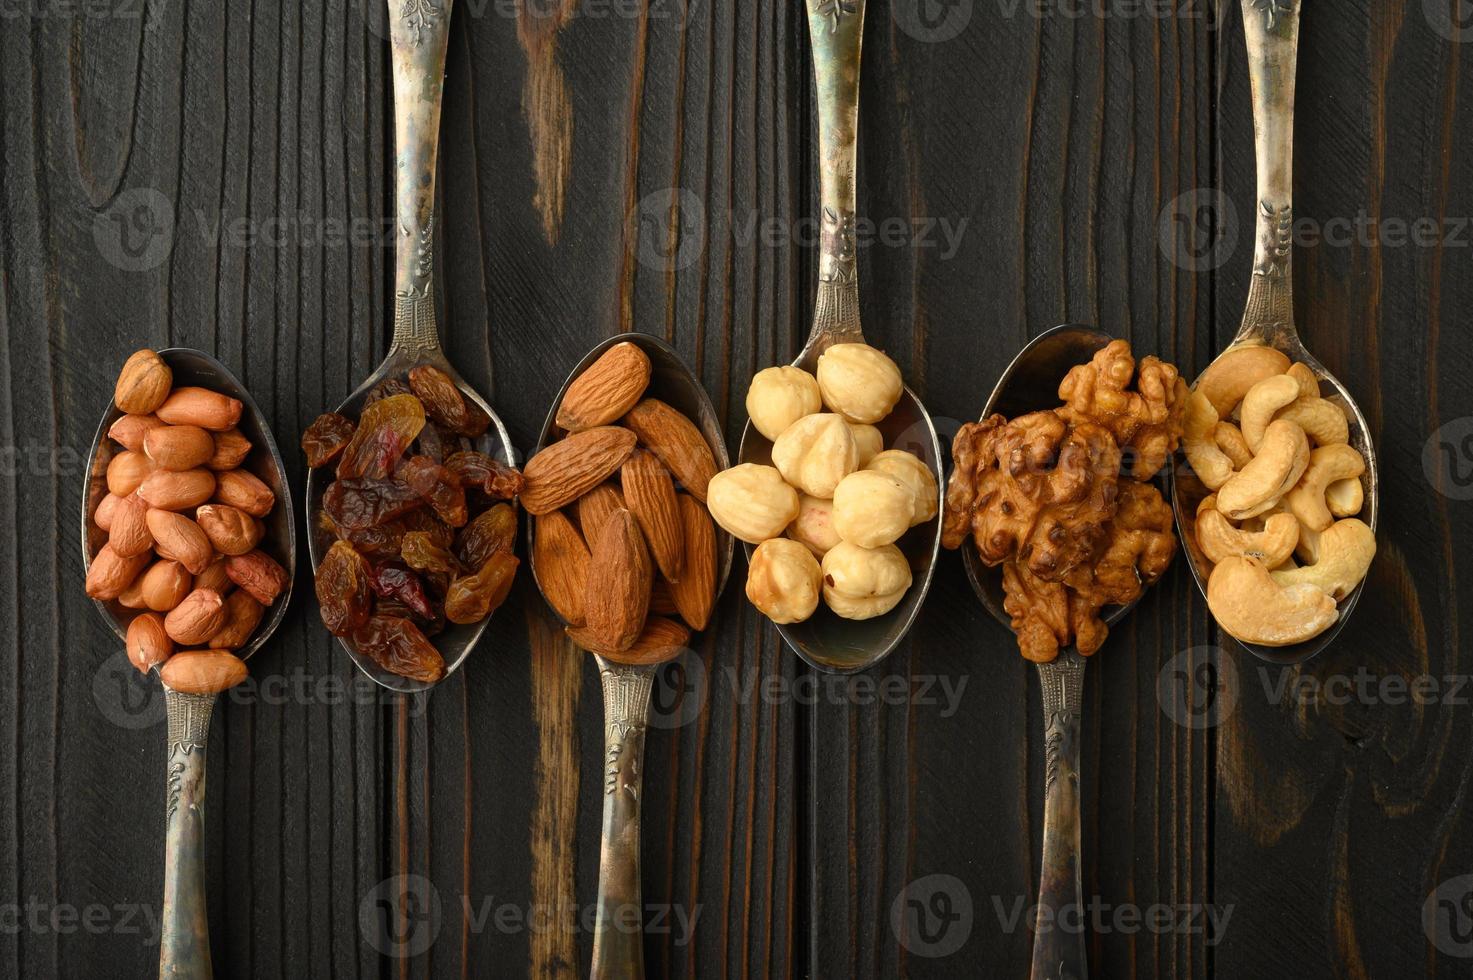 hazelnoot, cashewnoten, rozijnen, amandelen, pinda's, walnoten in zilveren lepels op een rustieke achtergrond foto